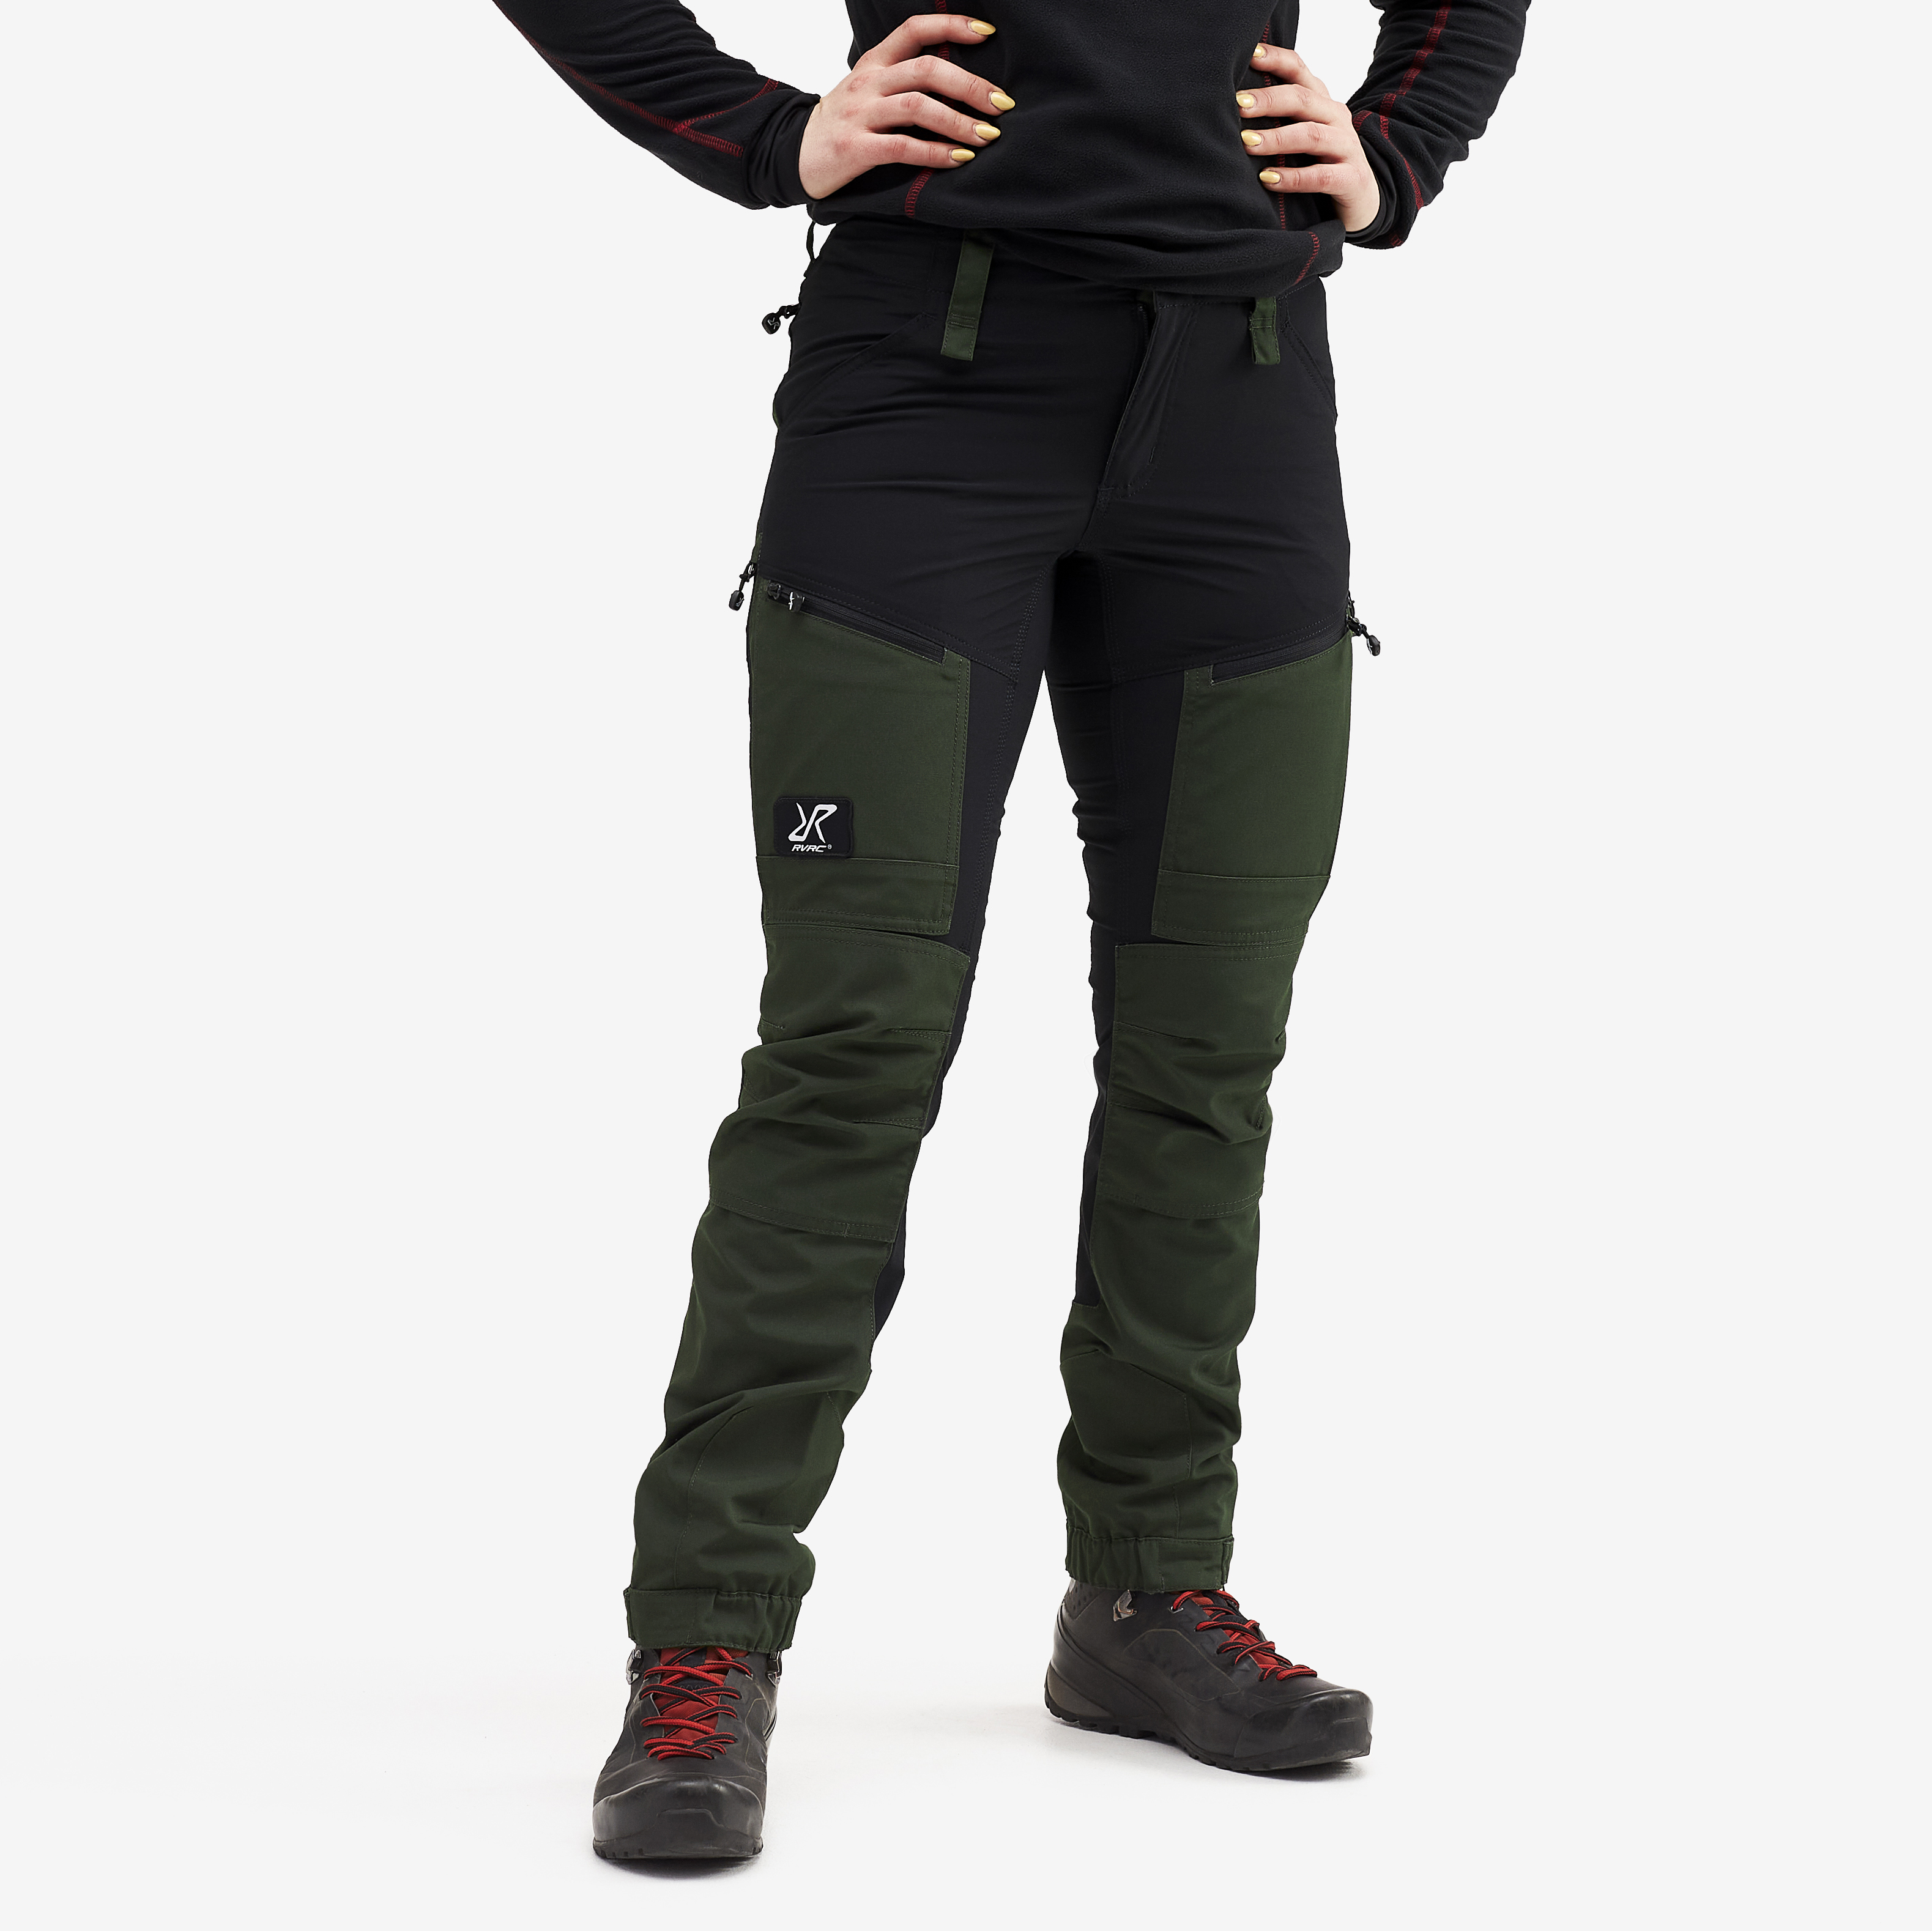 Pantalones trekking RVRC GP Pro Short para mujer en verde